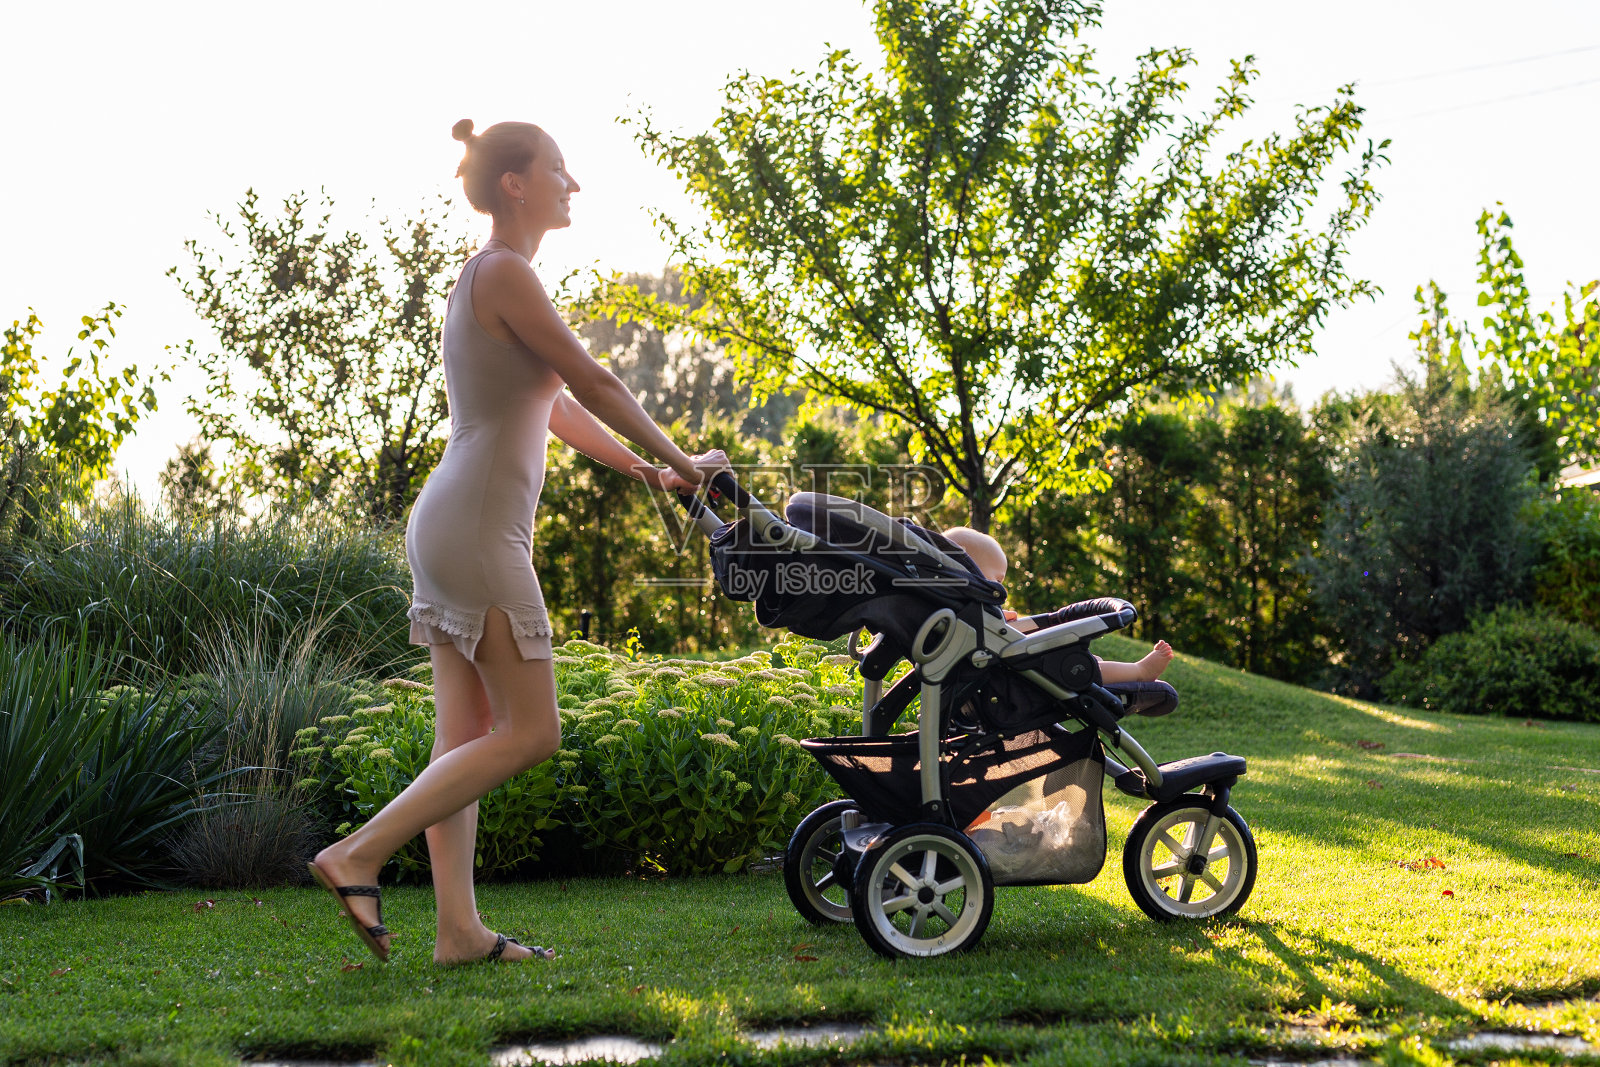 年轻漂亮的母亲与婴儿在婴儿车享受散步在绿色新鲜的花园日落。妈妈在美丽的公园里和婴儿玩得很开心。快乐的母亲概念照片摄影图片